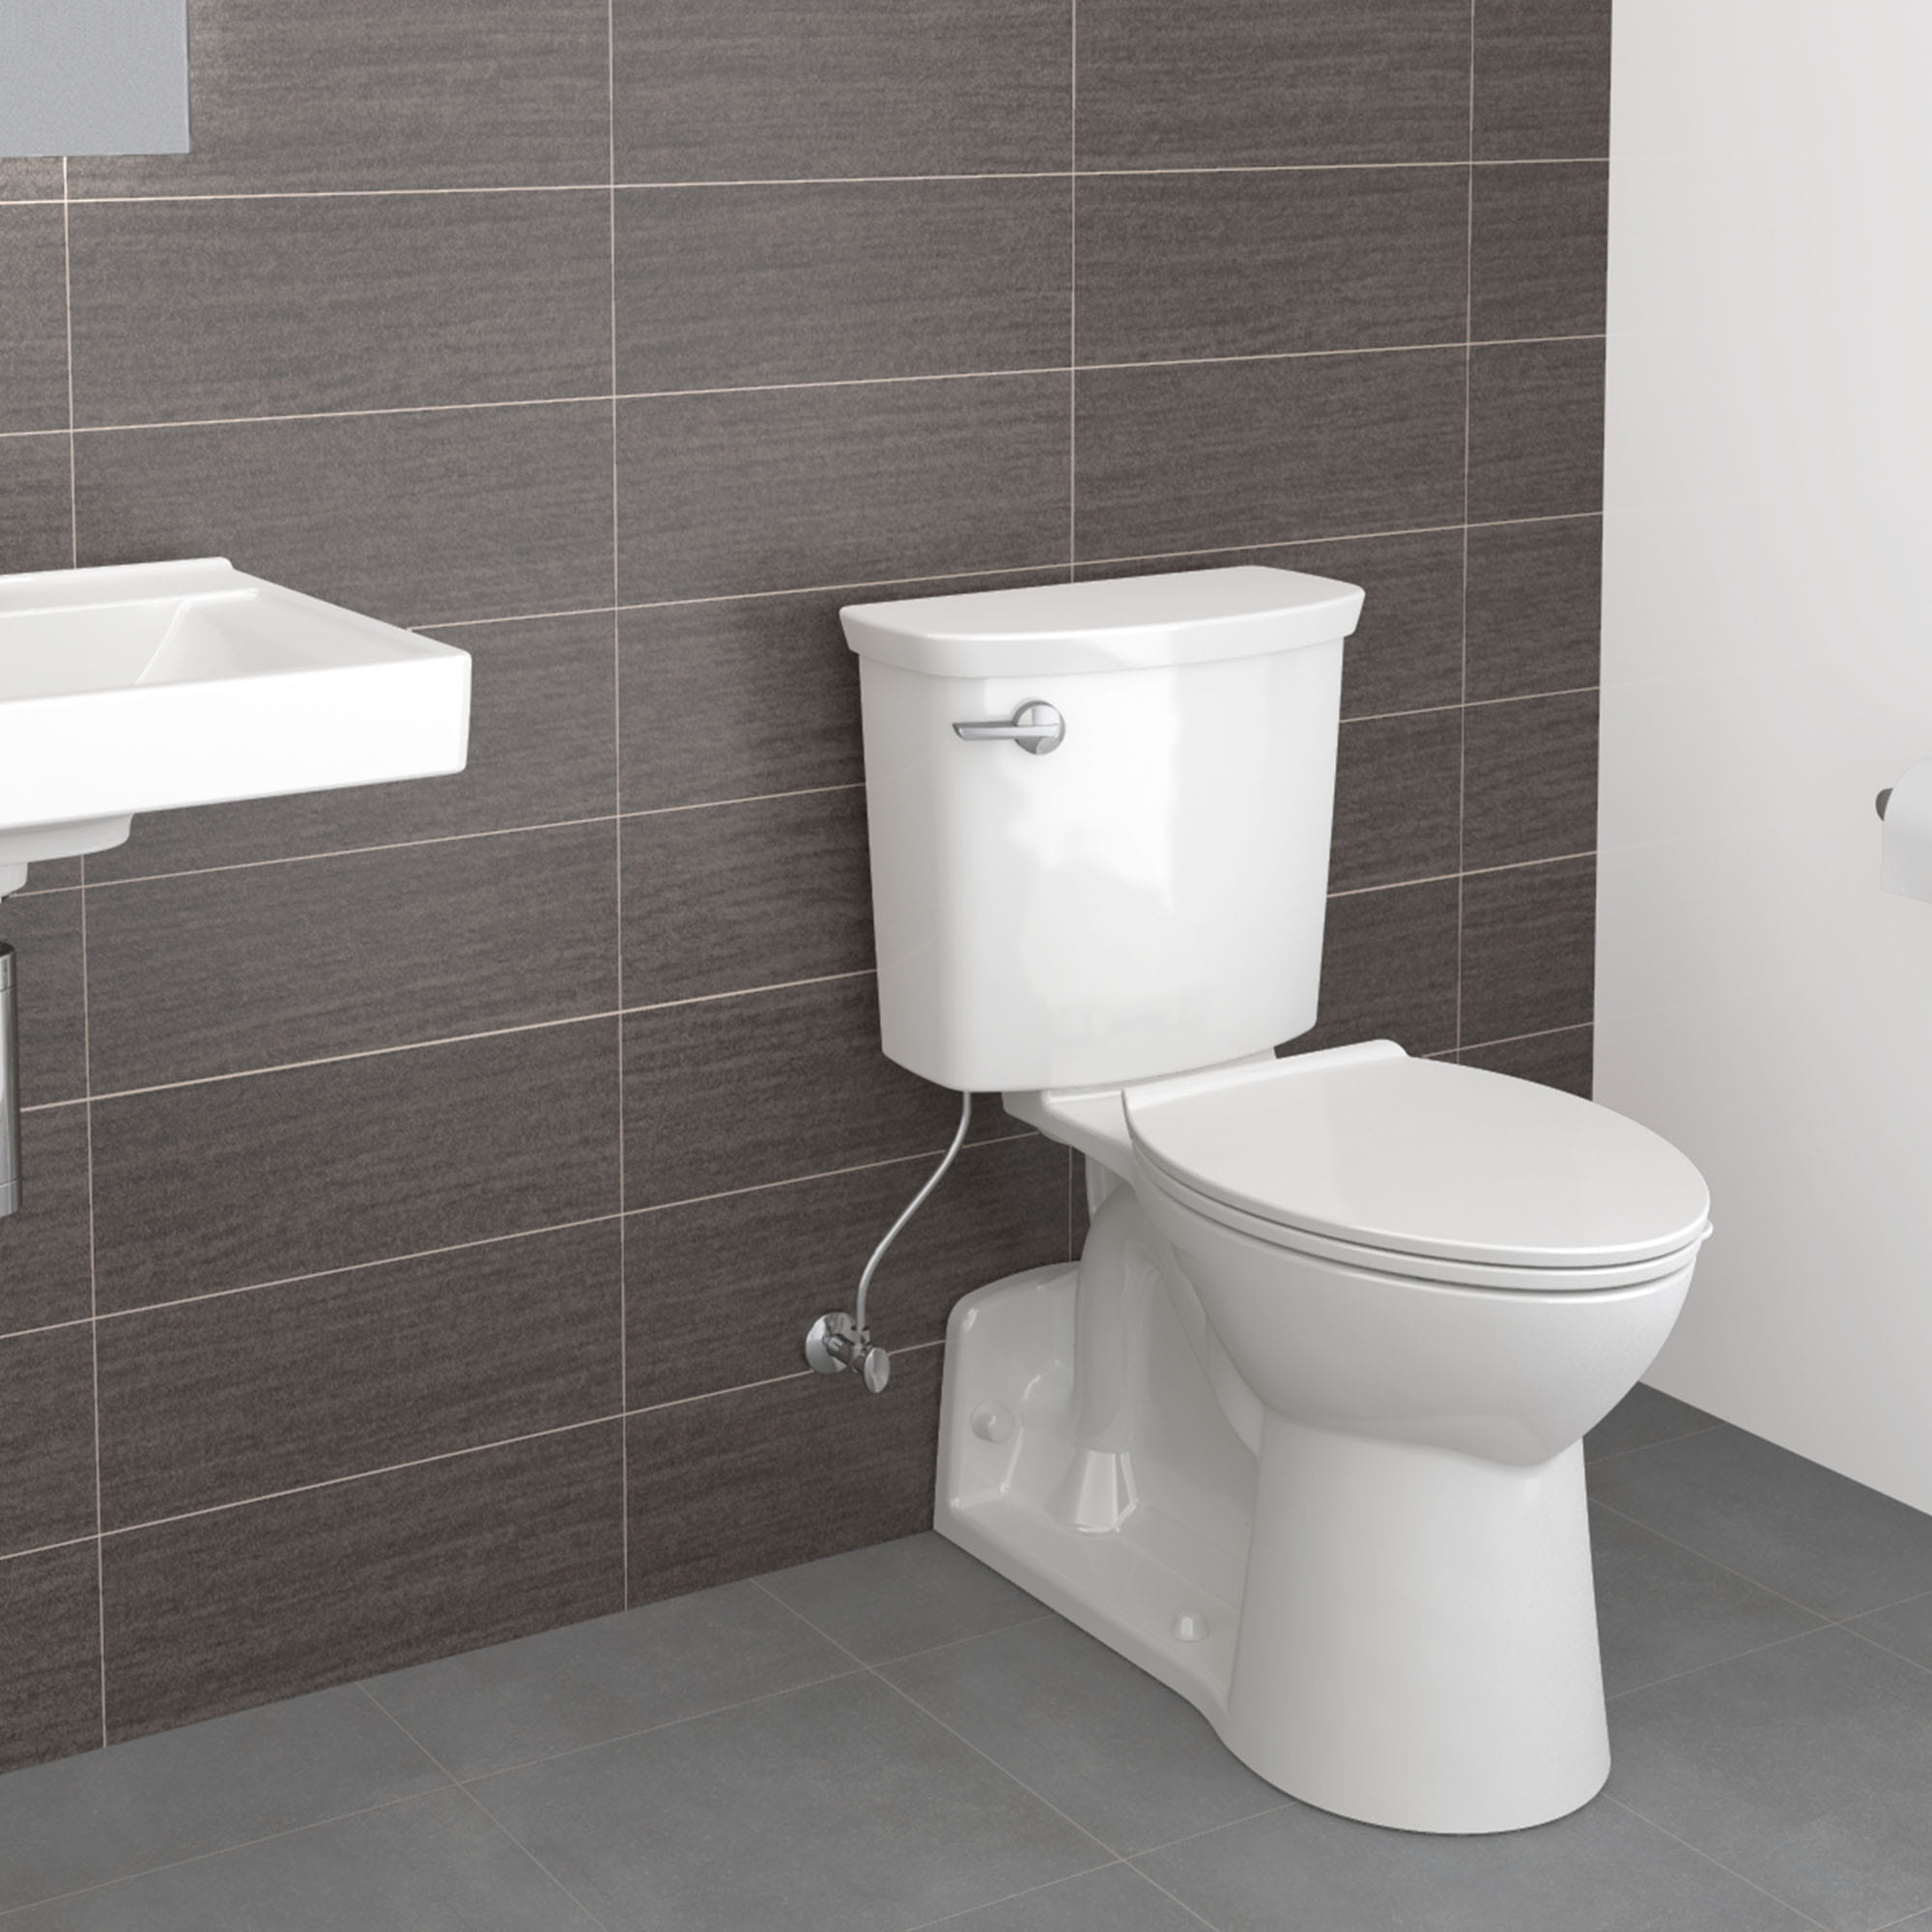 Yorkville™ VorMax® - Toilette allongée deux pièces à hauteur de chaise, 1,28 gpc/4,8 lpc avec  EverClean®, avec sortie arrière